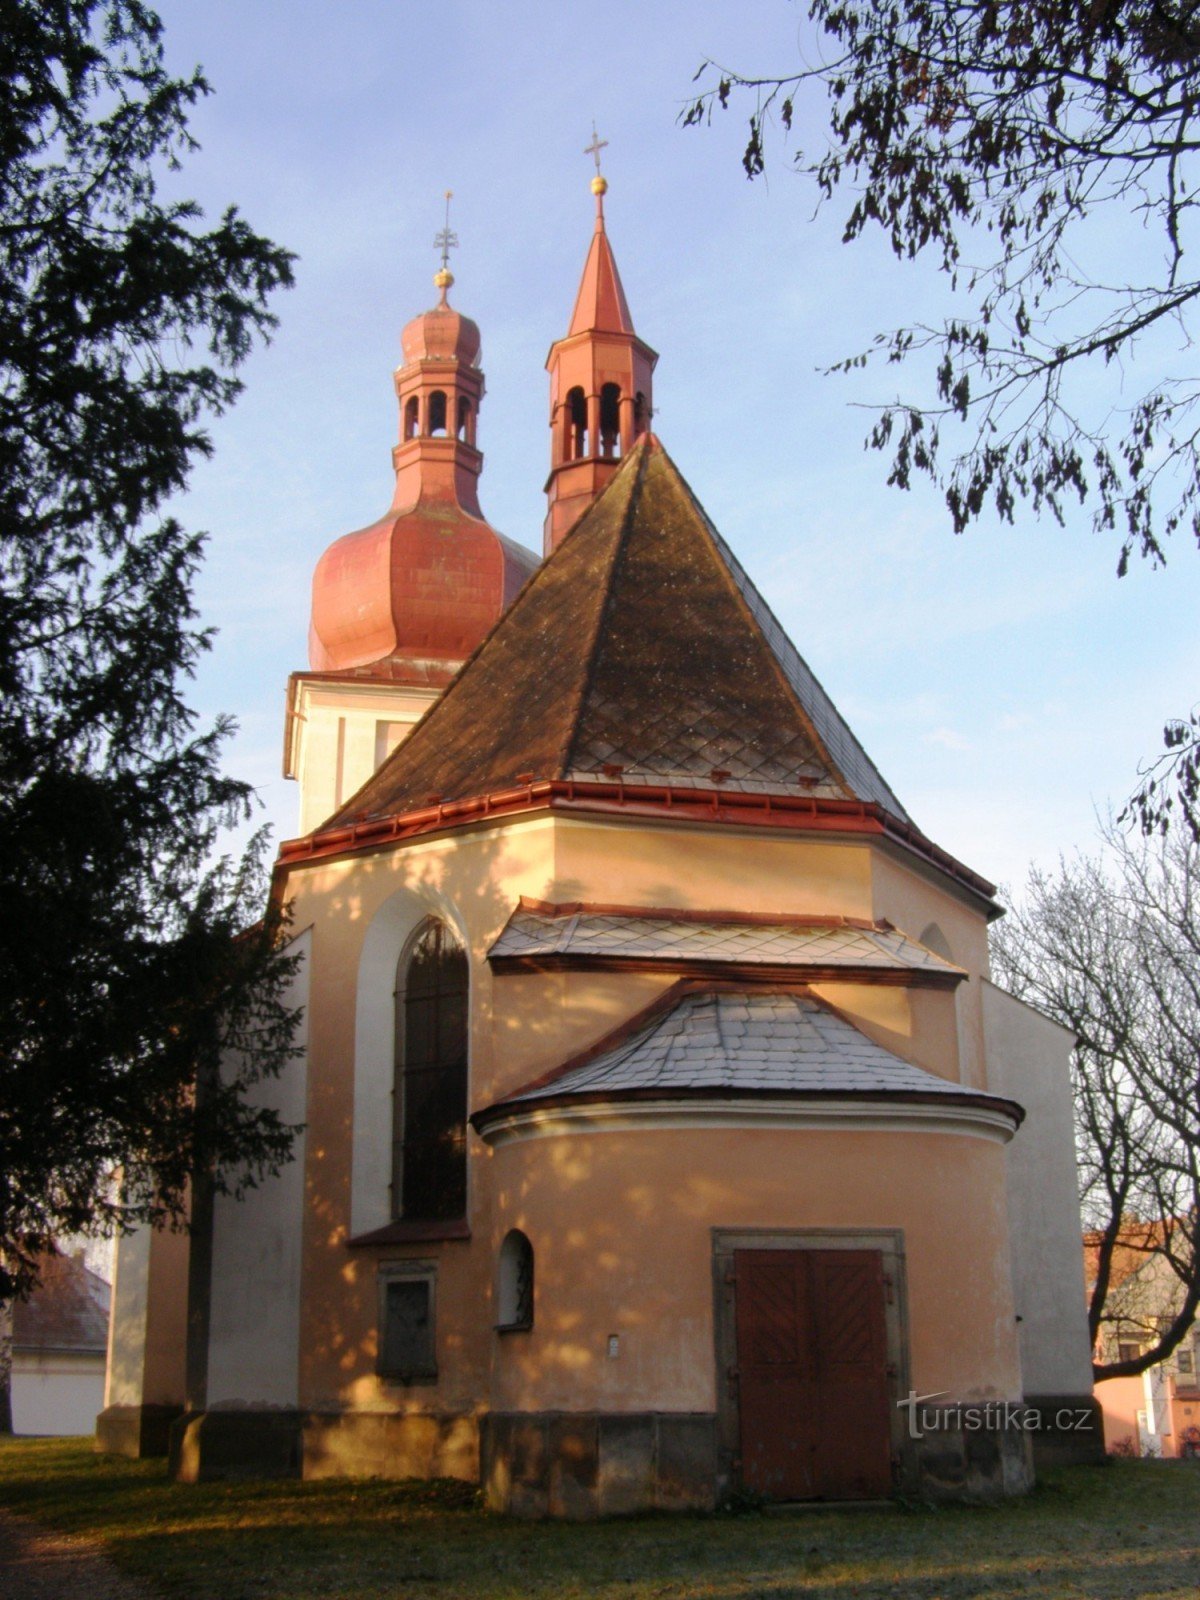 Jaroměř - church of St. Jakub